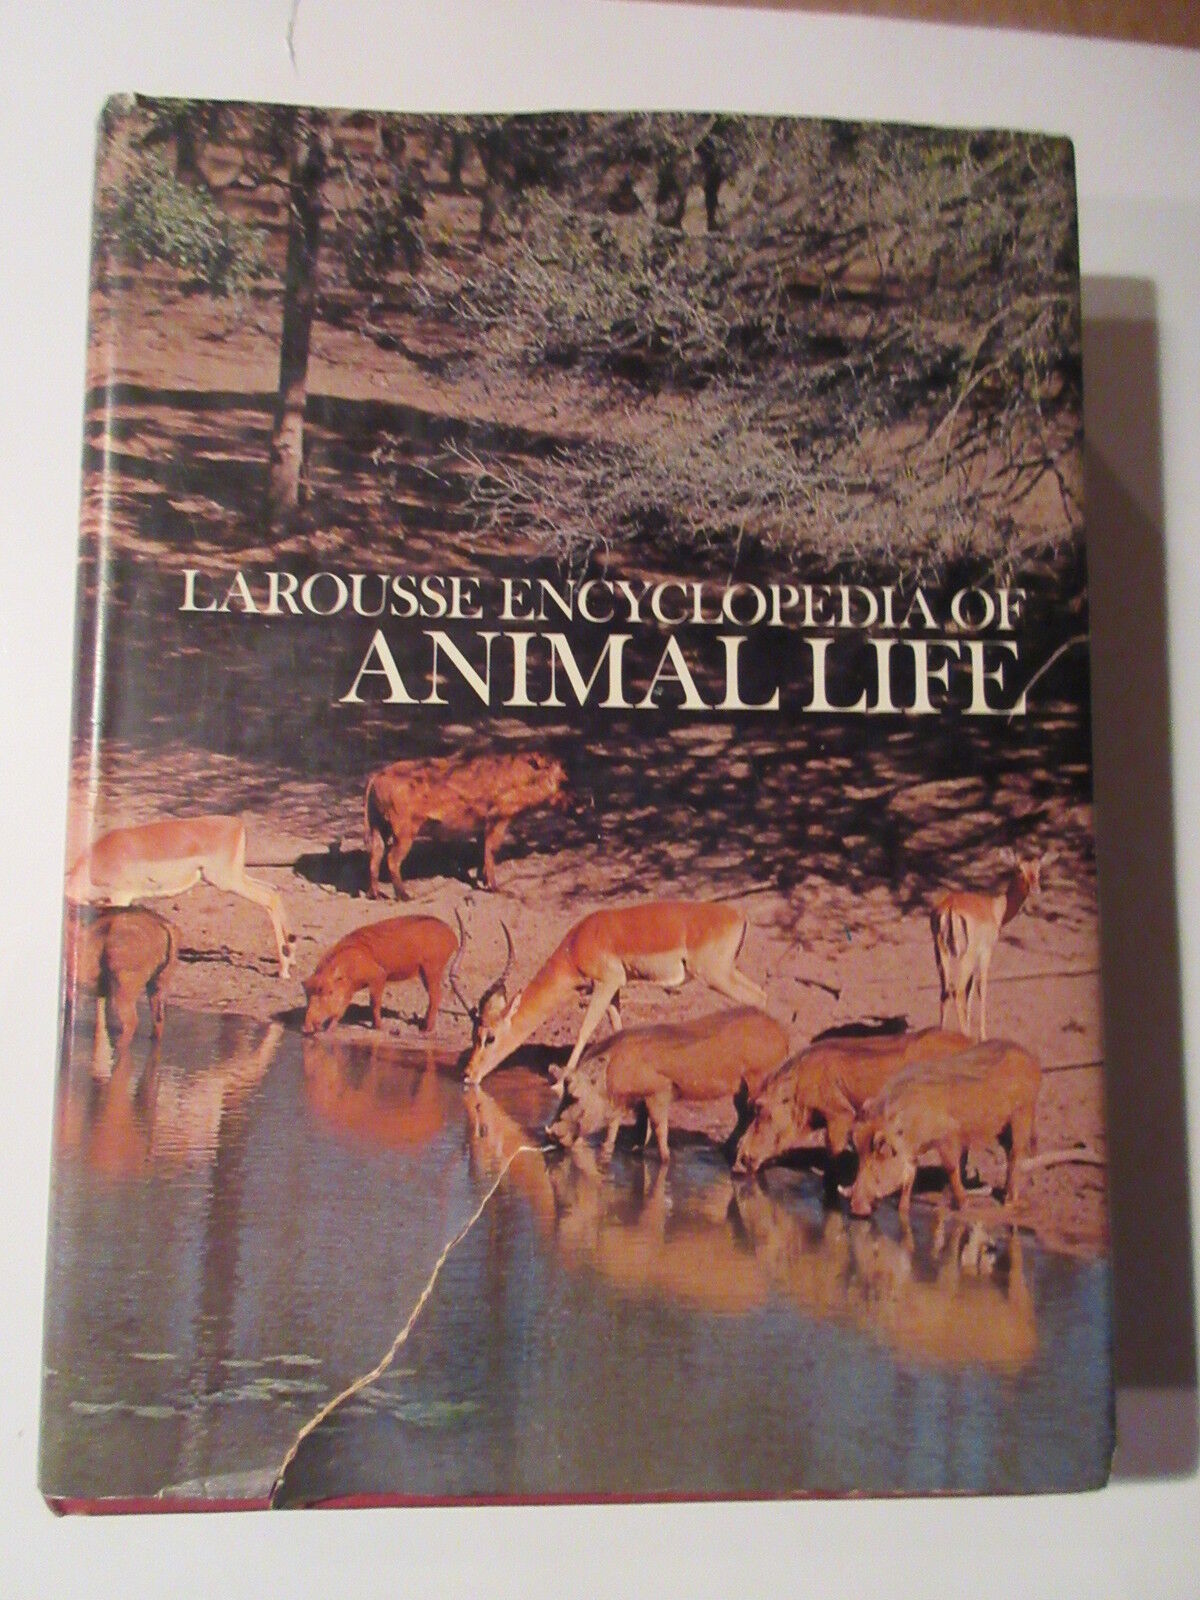 Encyclopedia of Animal Life- Larousse - 1972  HARD COVER